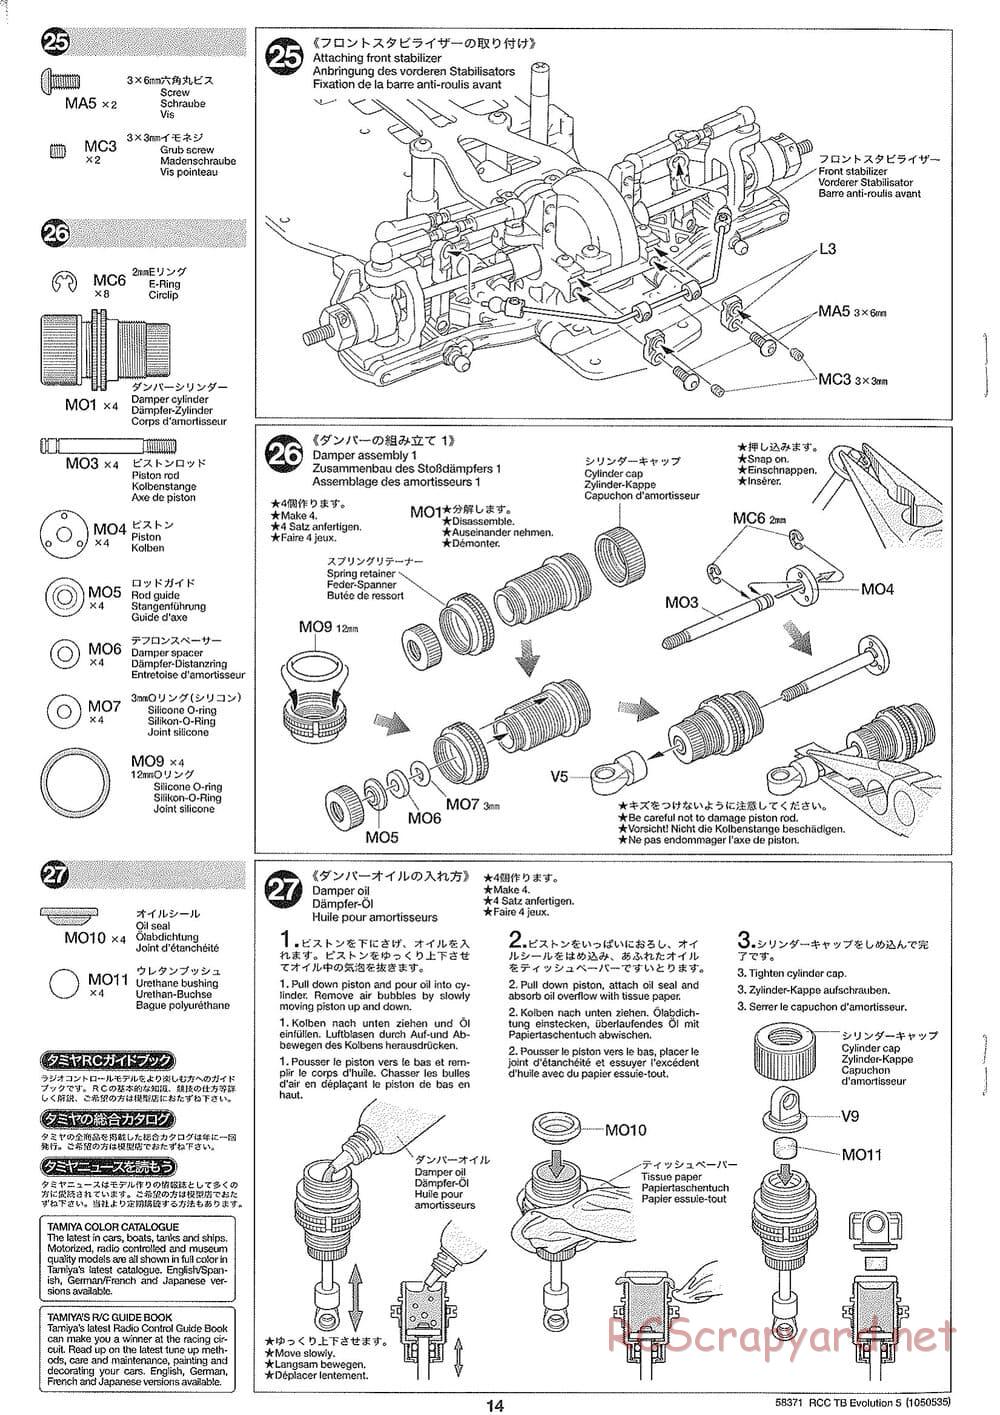 Tamiya - TB Evolution V Chassis - Manual - Page 14